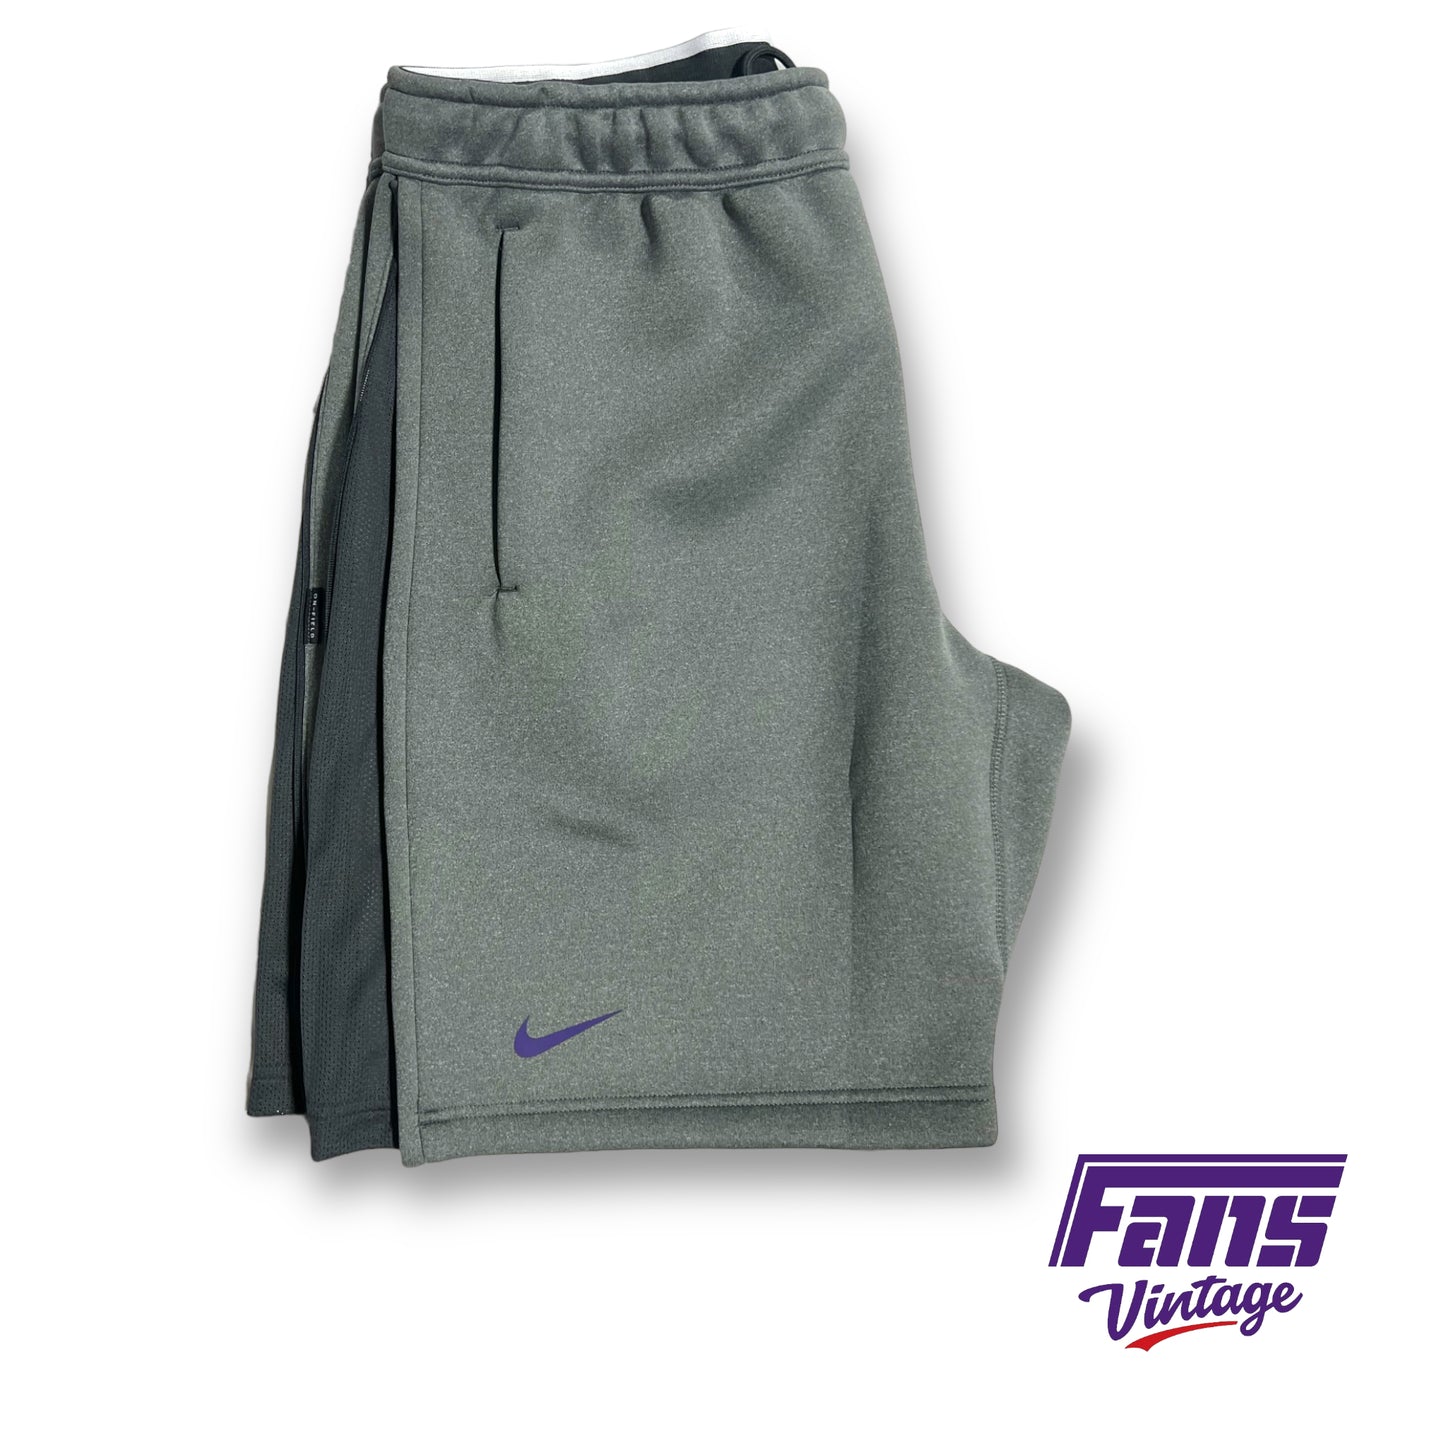 Nike TCU team issued shorts